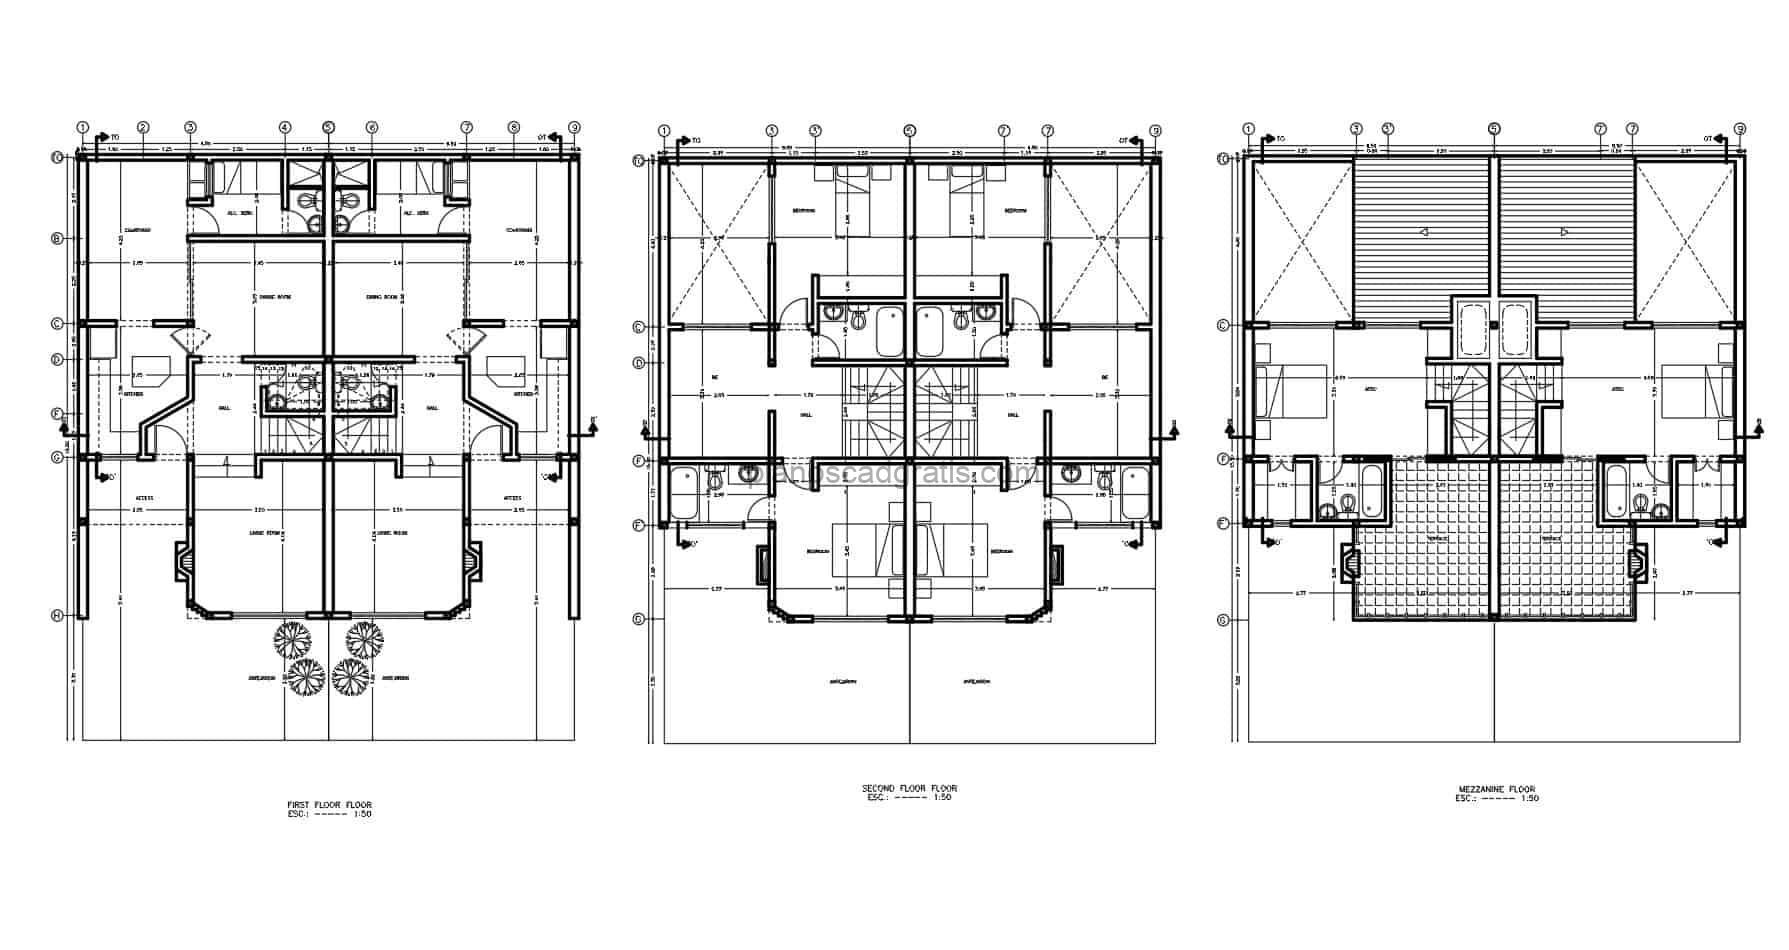 planos en formato dwg de autoca de casa campestre de dos niveles planta arquitectonica y dimensionada para descarga gratis